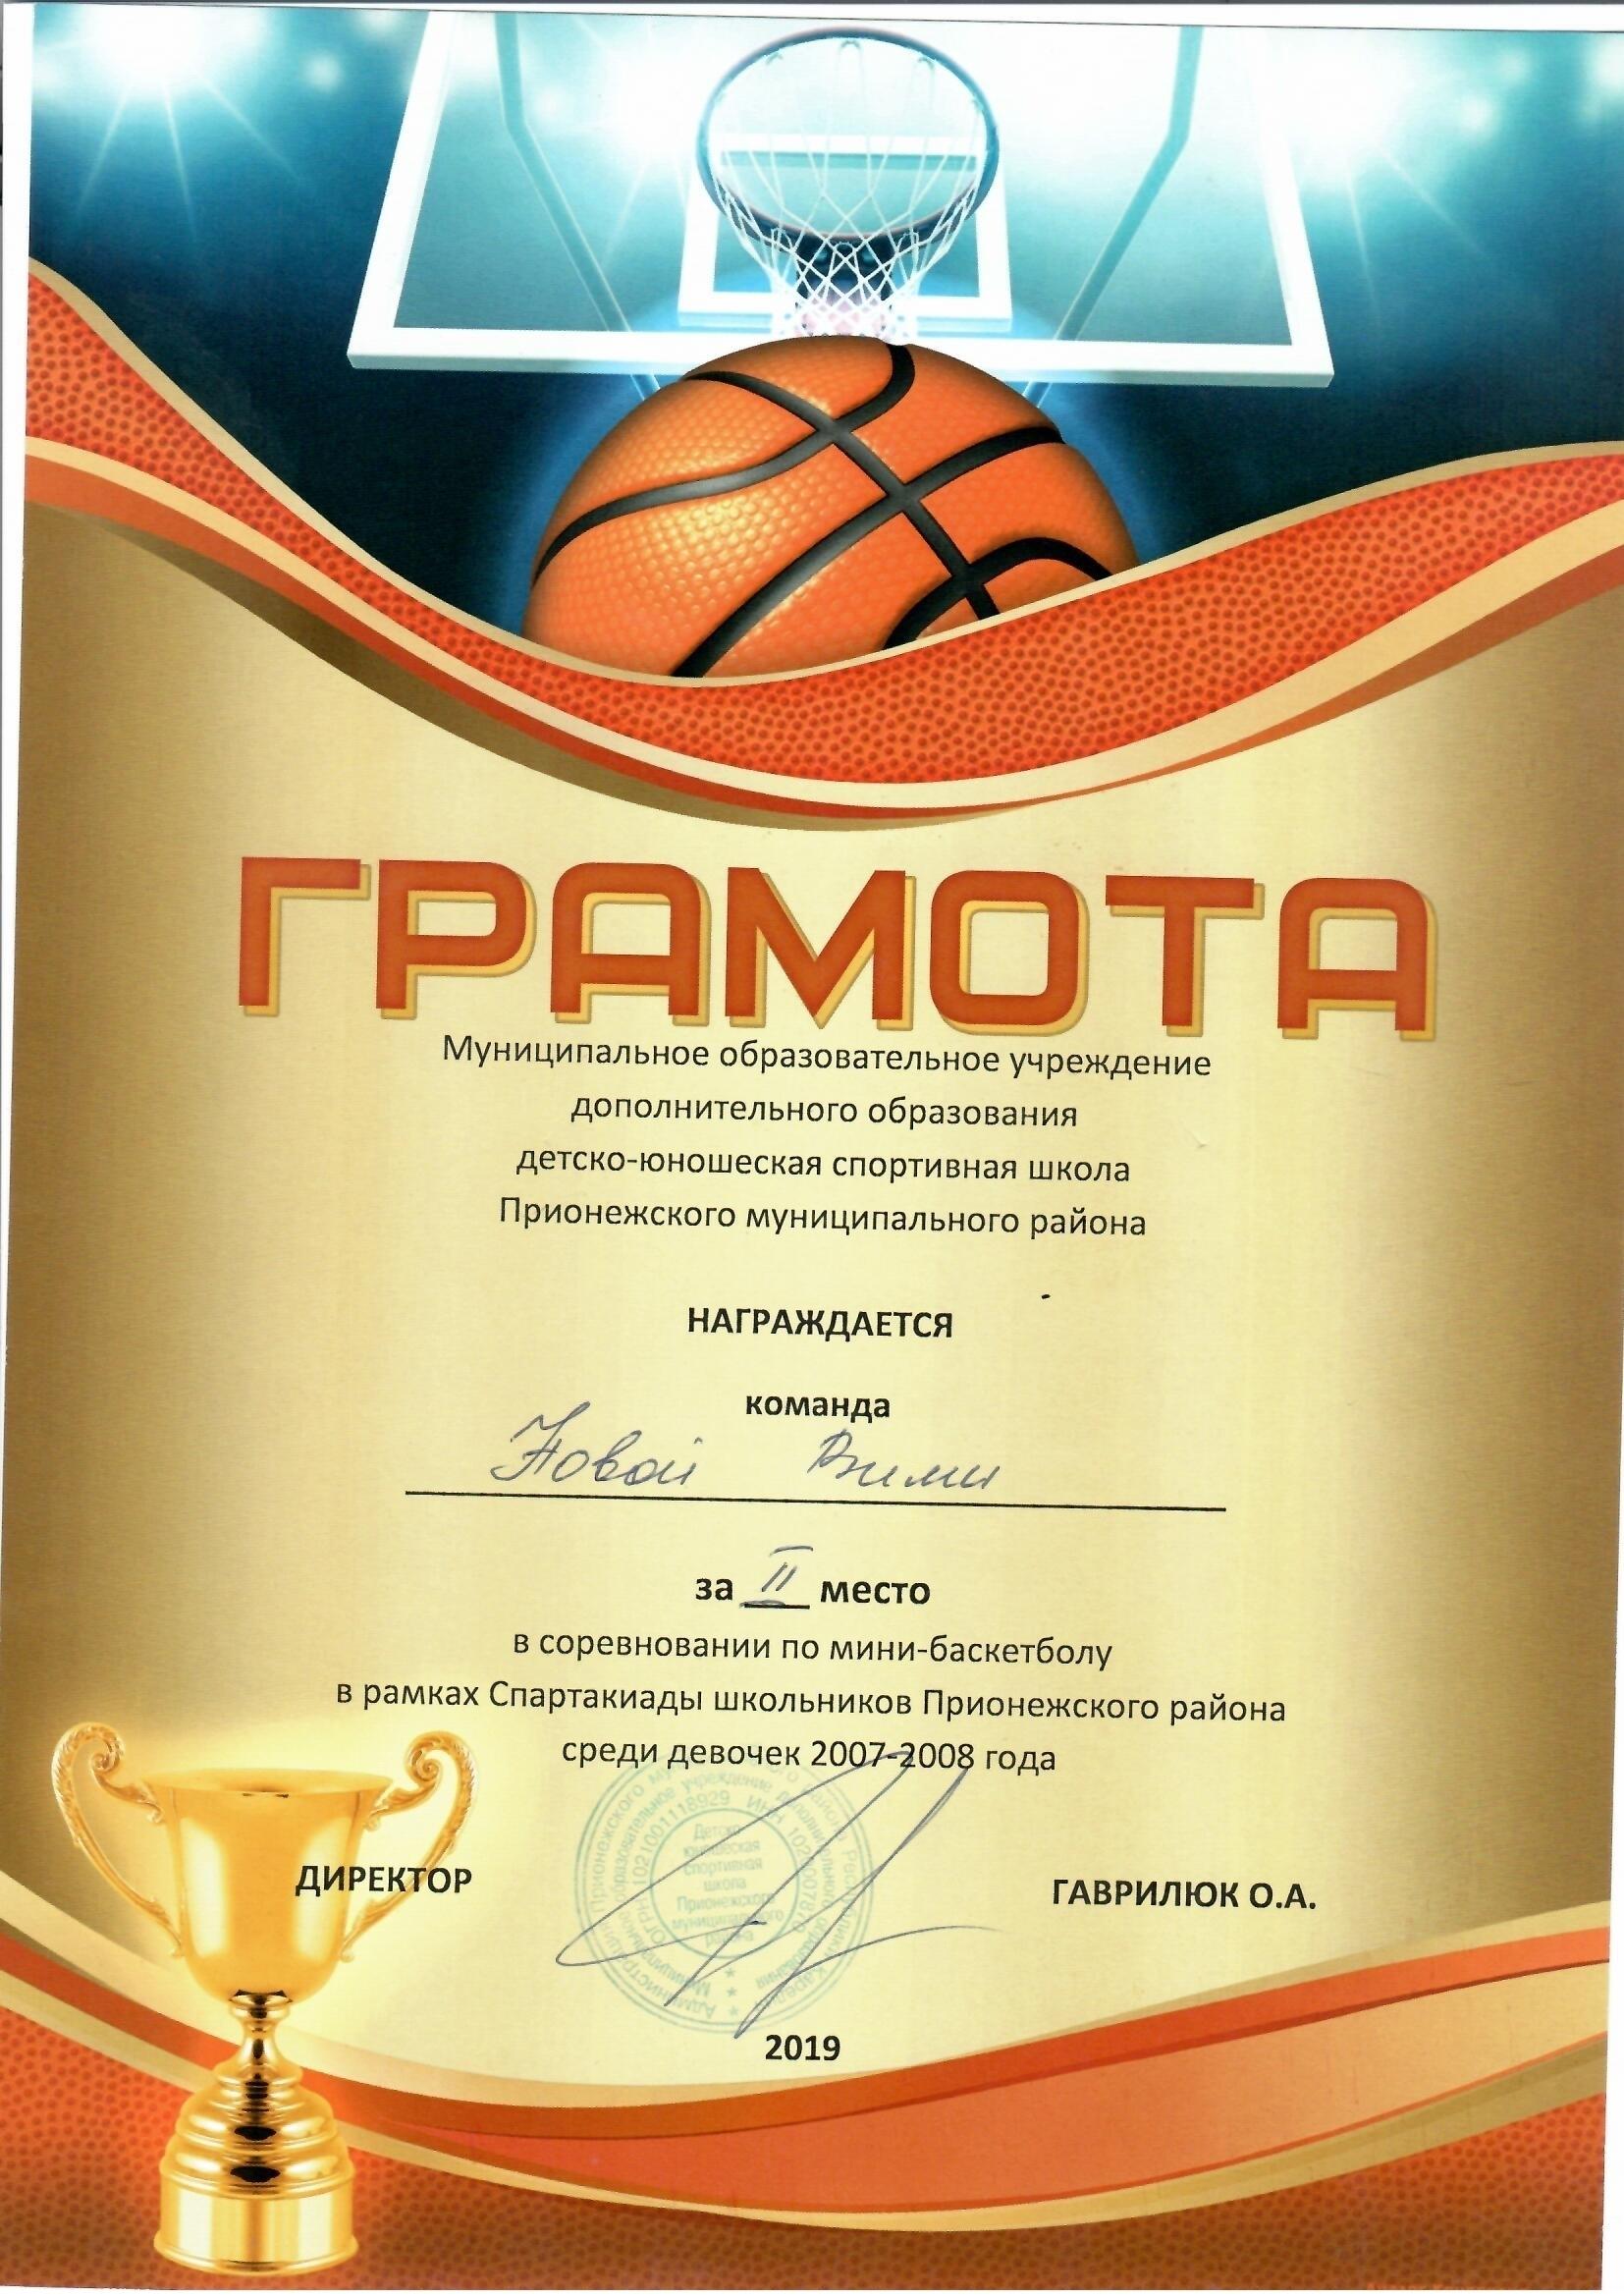 За 2 место в Спартакиаде по мини-баскетболу среди девочек 2007-2008 г.р.